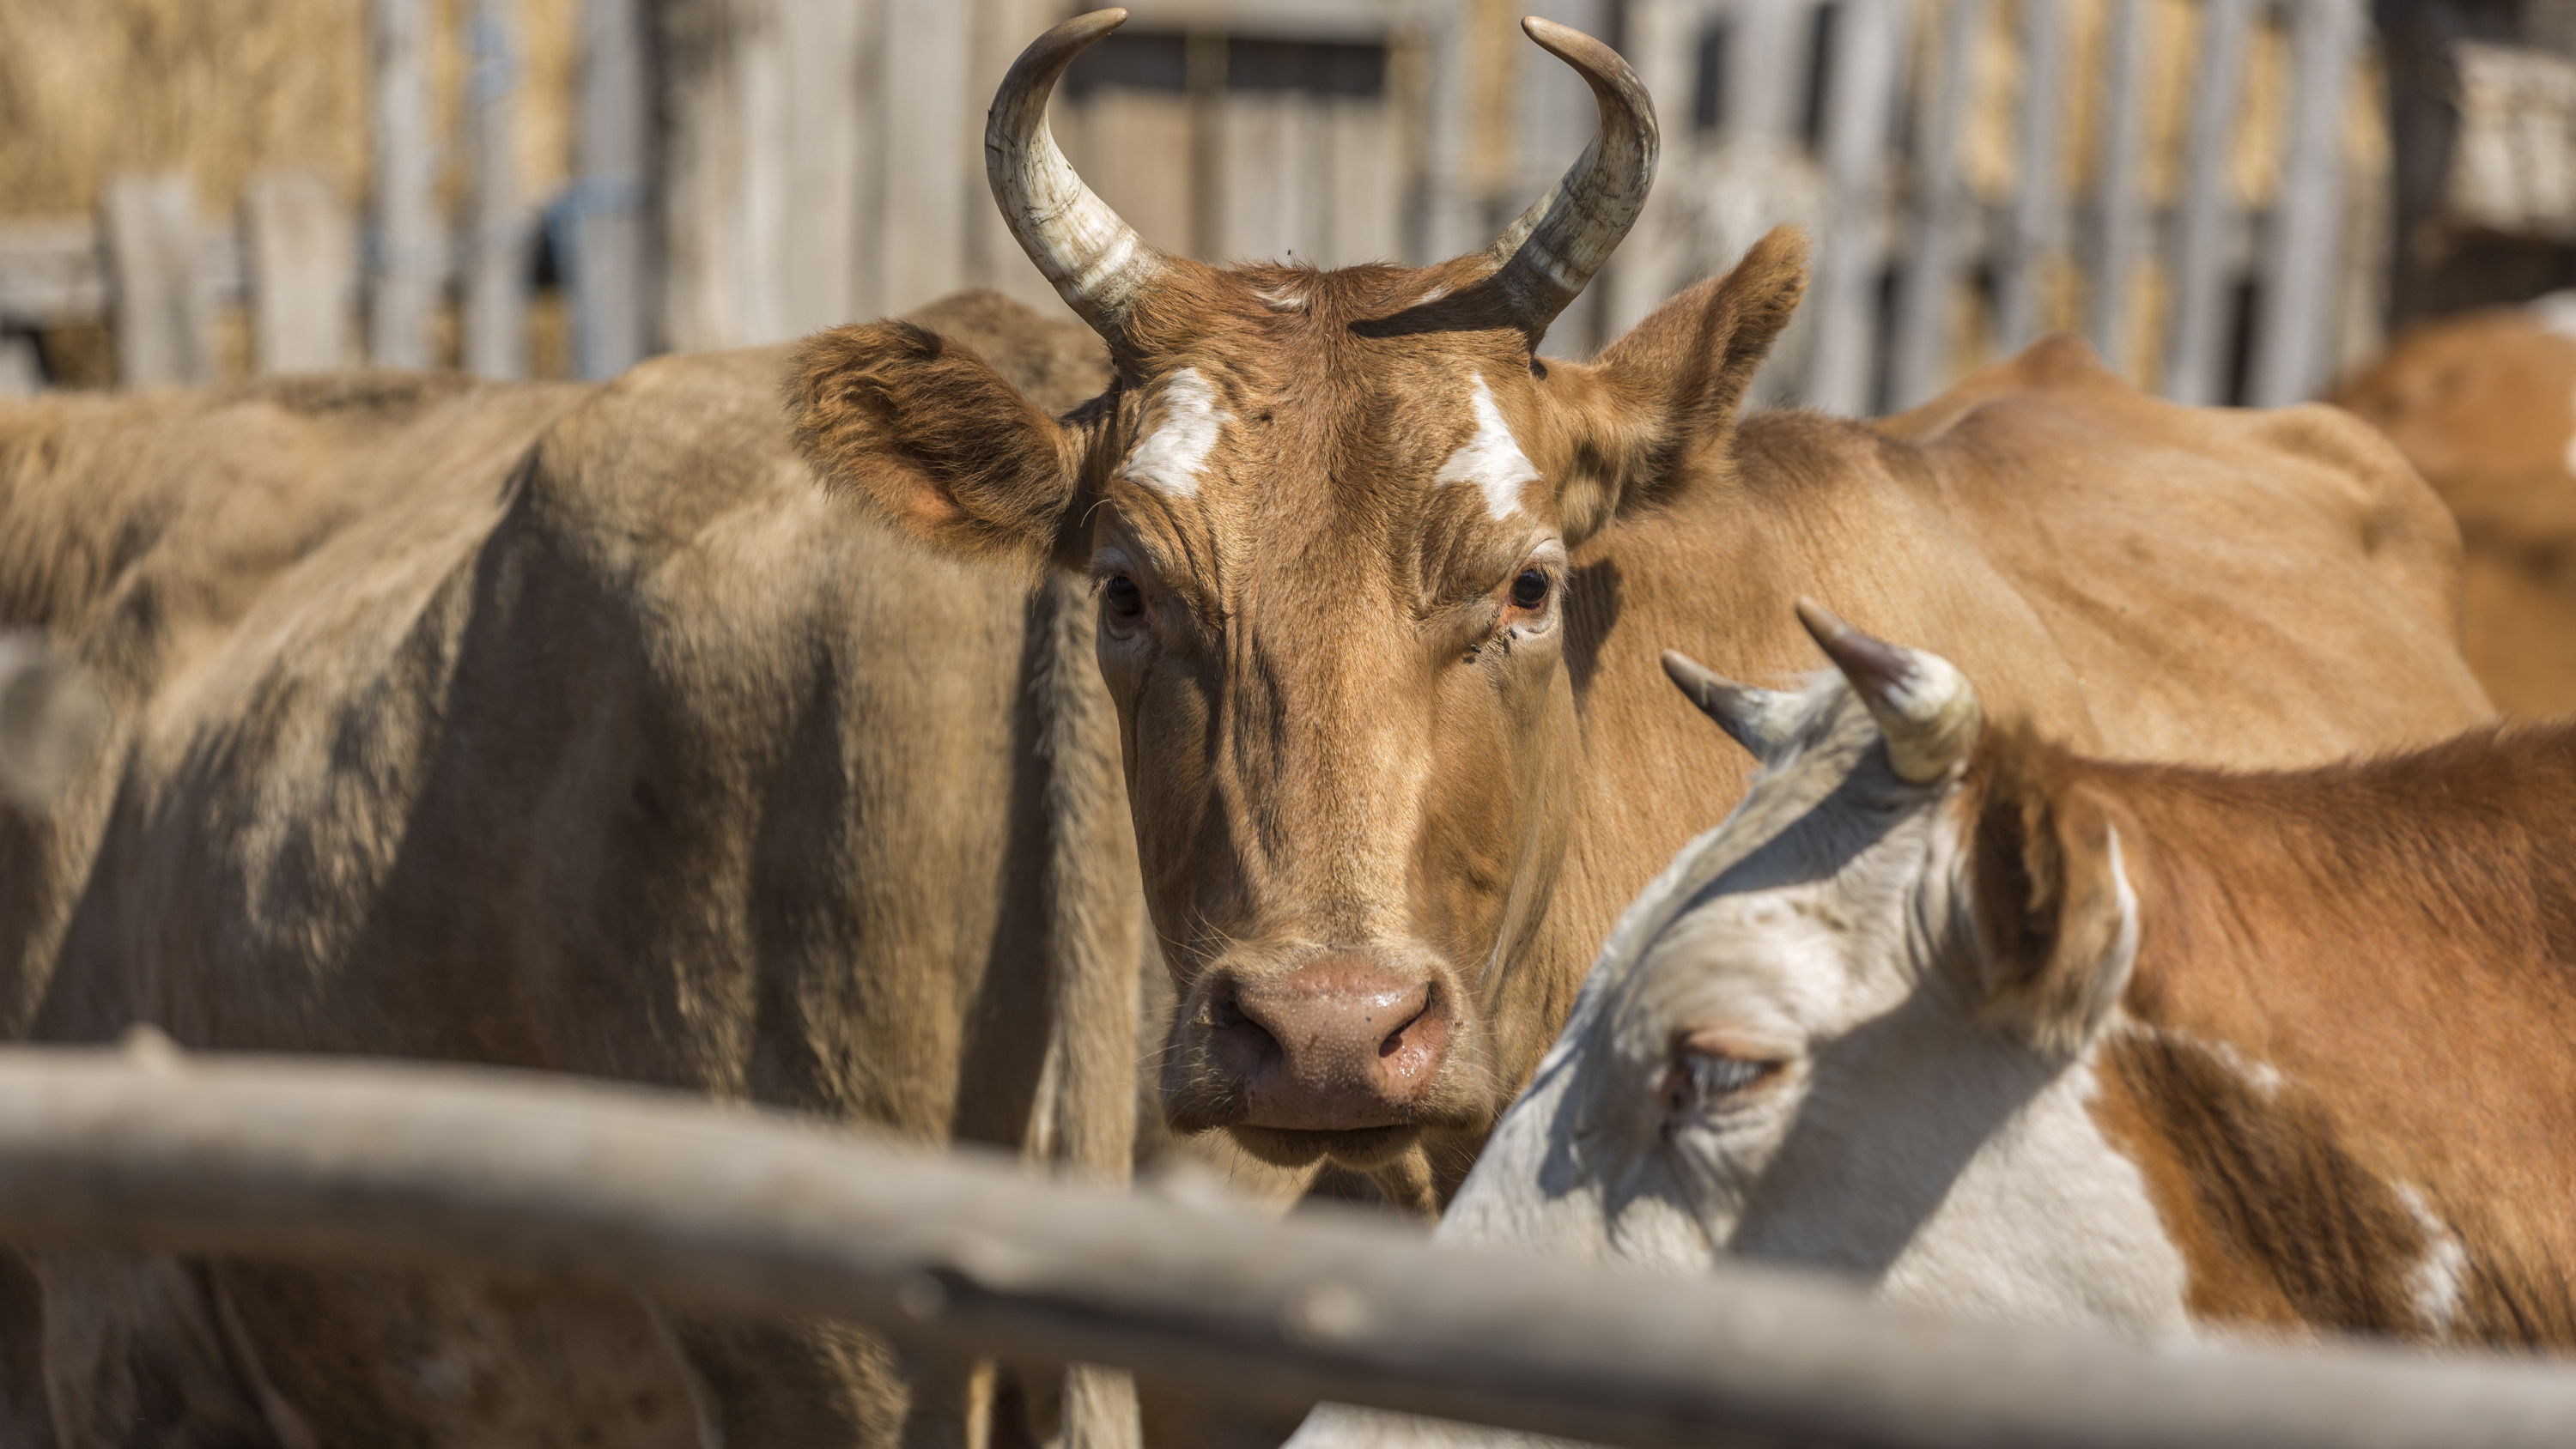 «Раздайте лучше в лизинг этих коров»: крестьянин из Волгограда высказался о борьбе за продовольственную безопасность страны